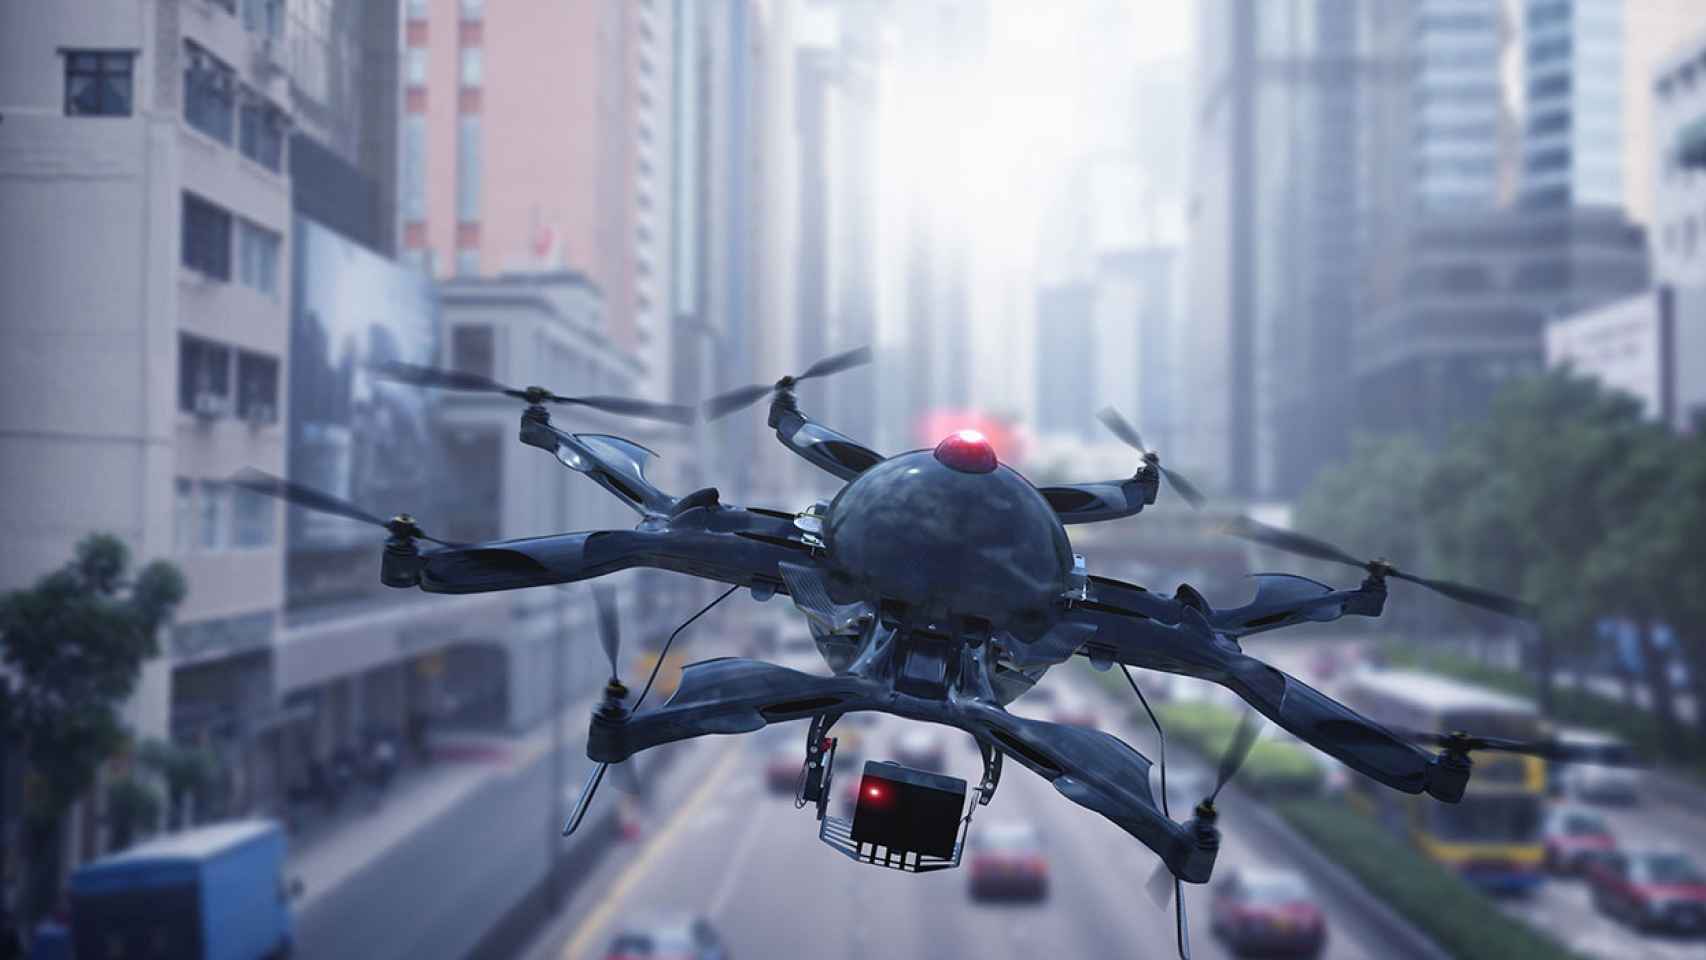 Hospitales de París y Nantes utilizarán drones para enviar medicamentos